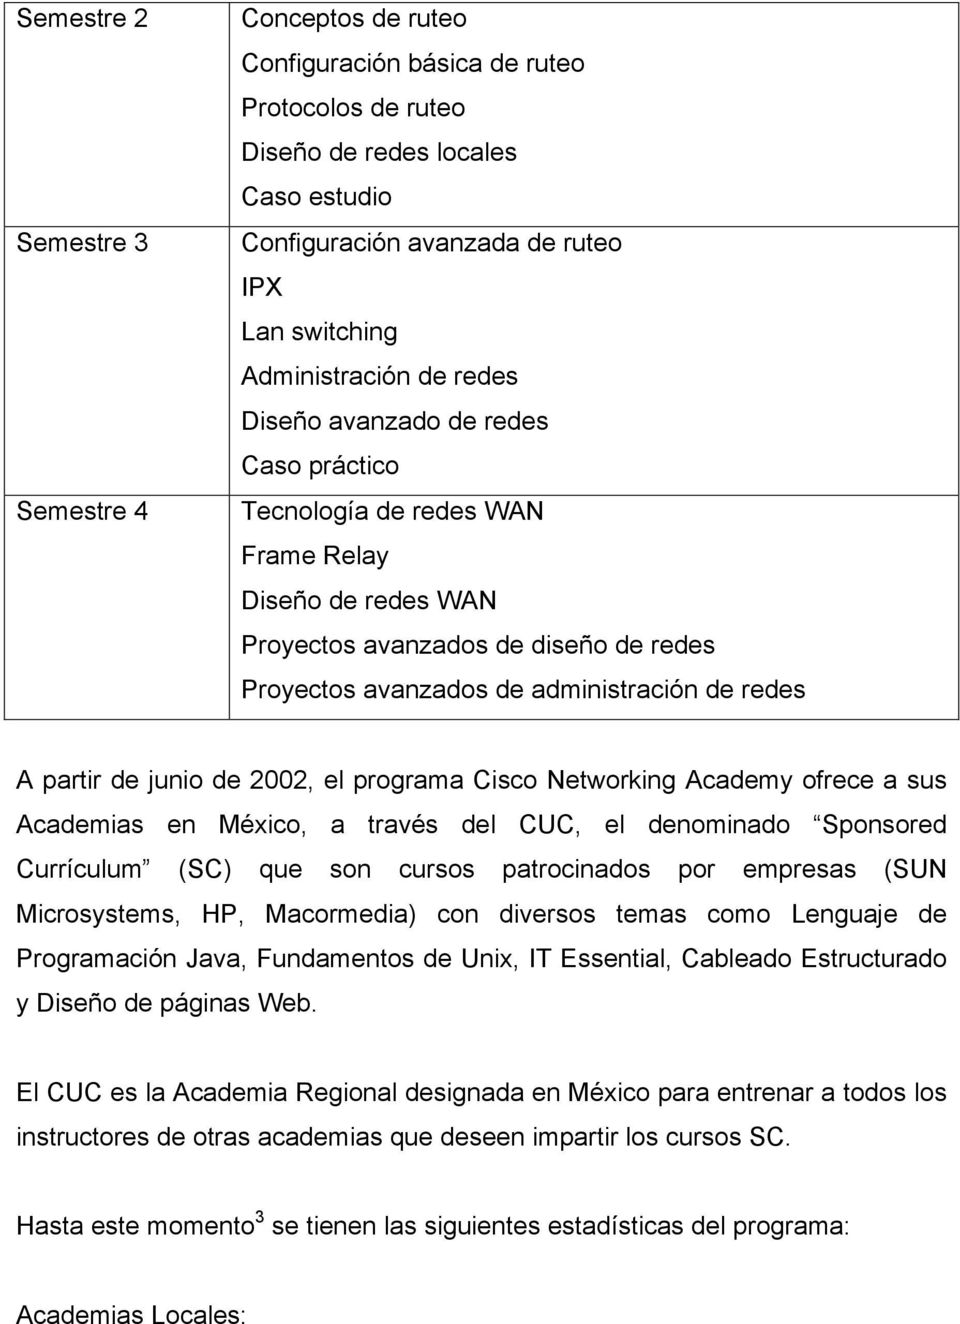 redes A partir de junio de 2002, el programa Cisco Networking Academy ofrece a sus Academias en México, a través del CUC, el denominado Sponsored Currículum (SC) que son cursos patrocinados por